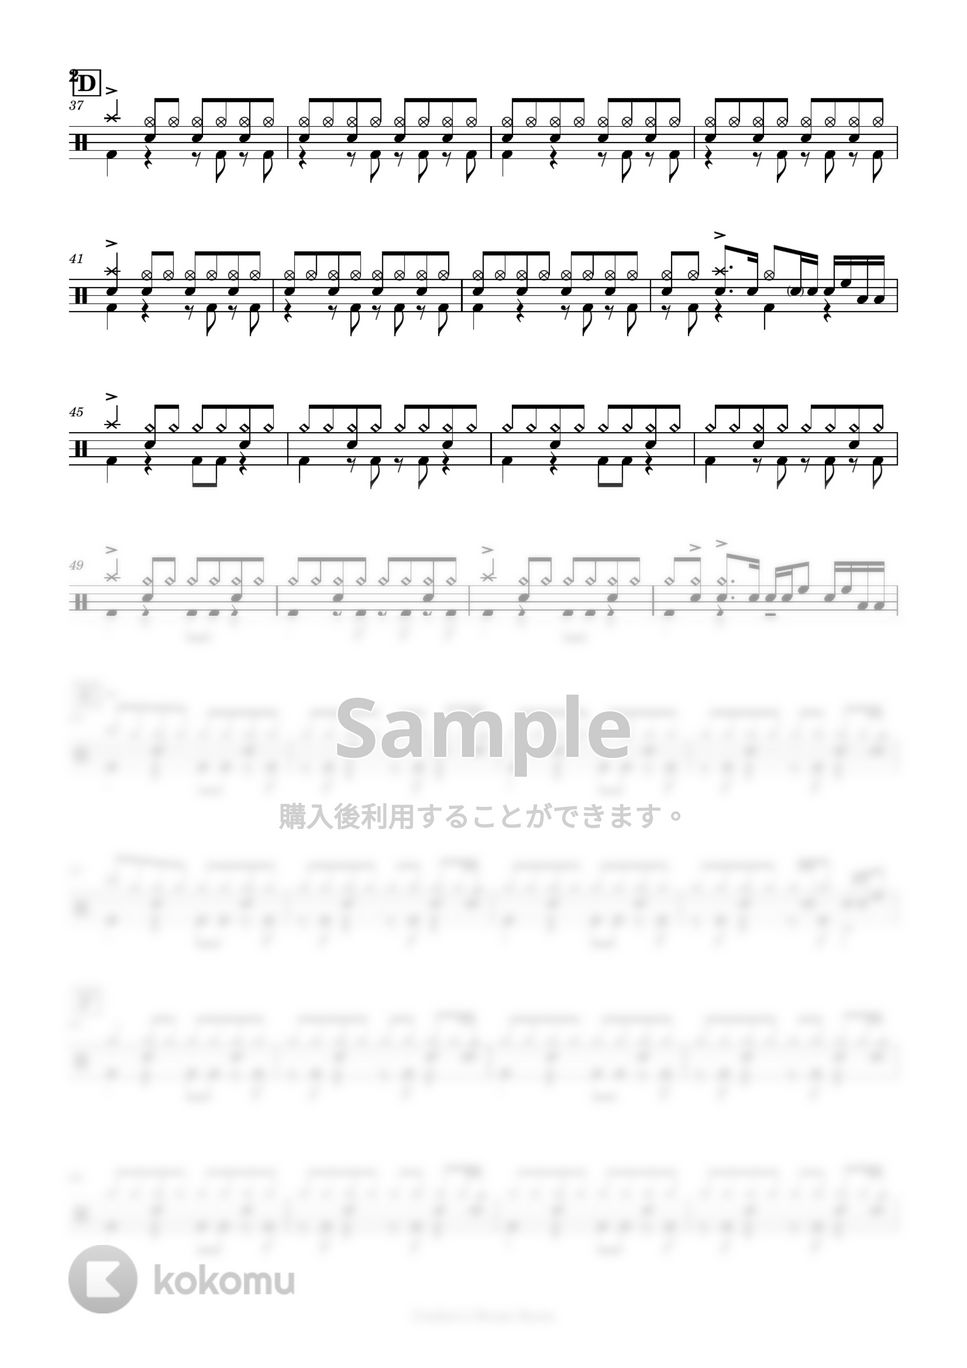 ヨルシカ - 靴の花火 by Cookie's Drum Score